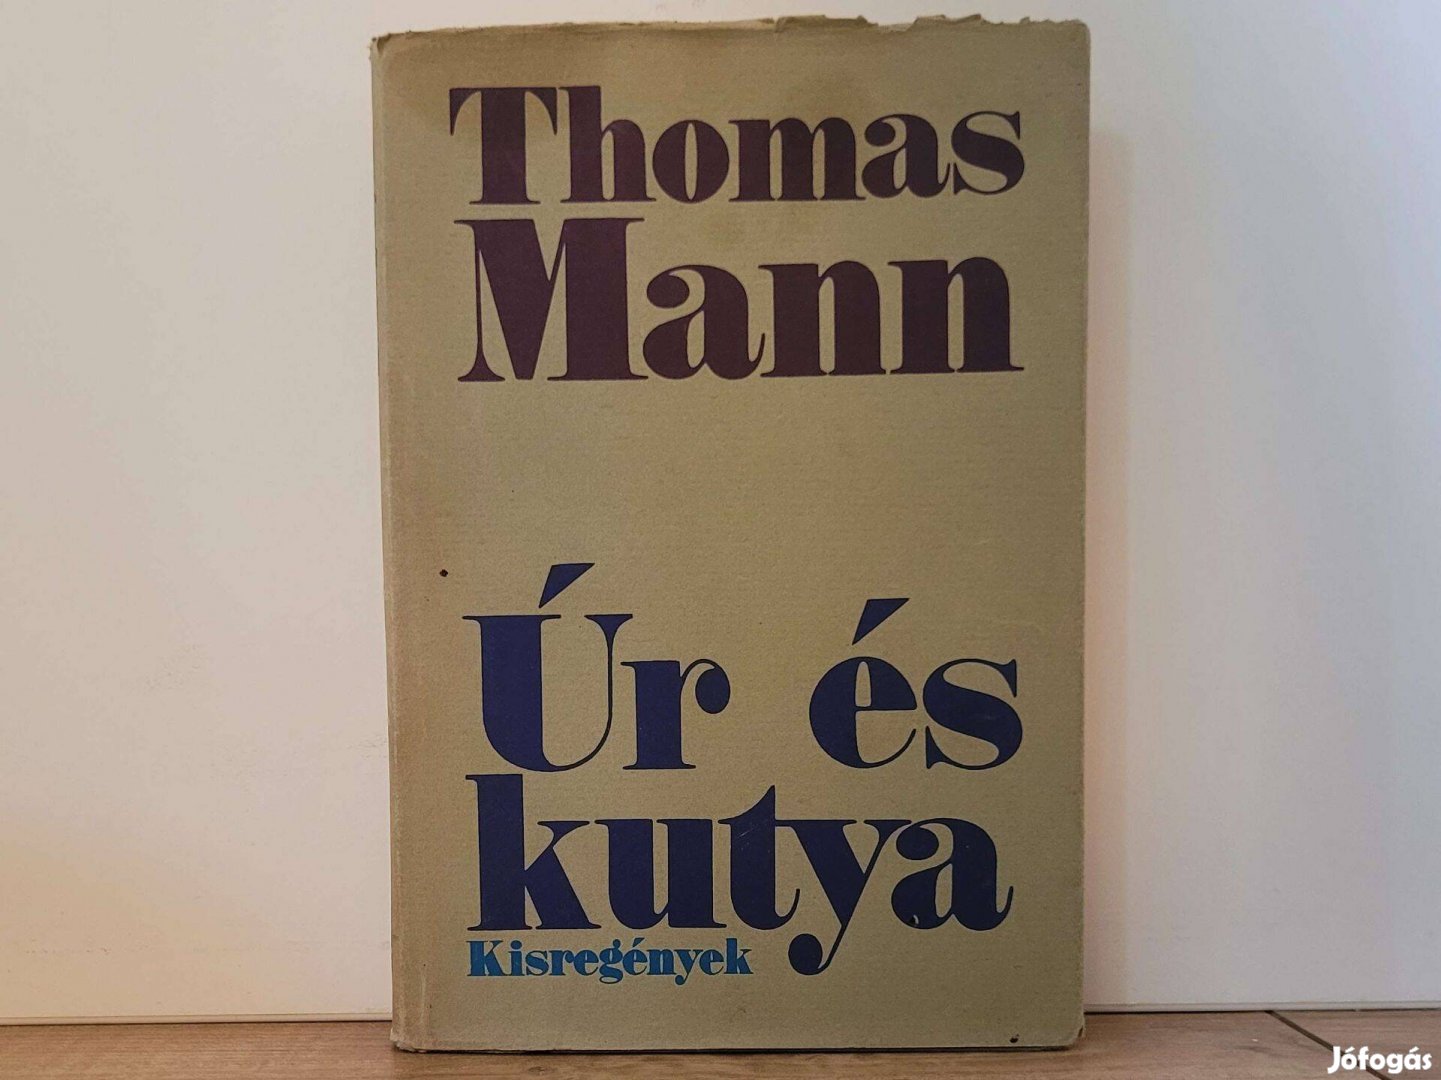 Úr és kutya - Thomas Mann könyv eladó